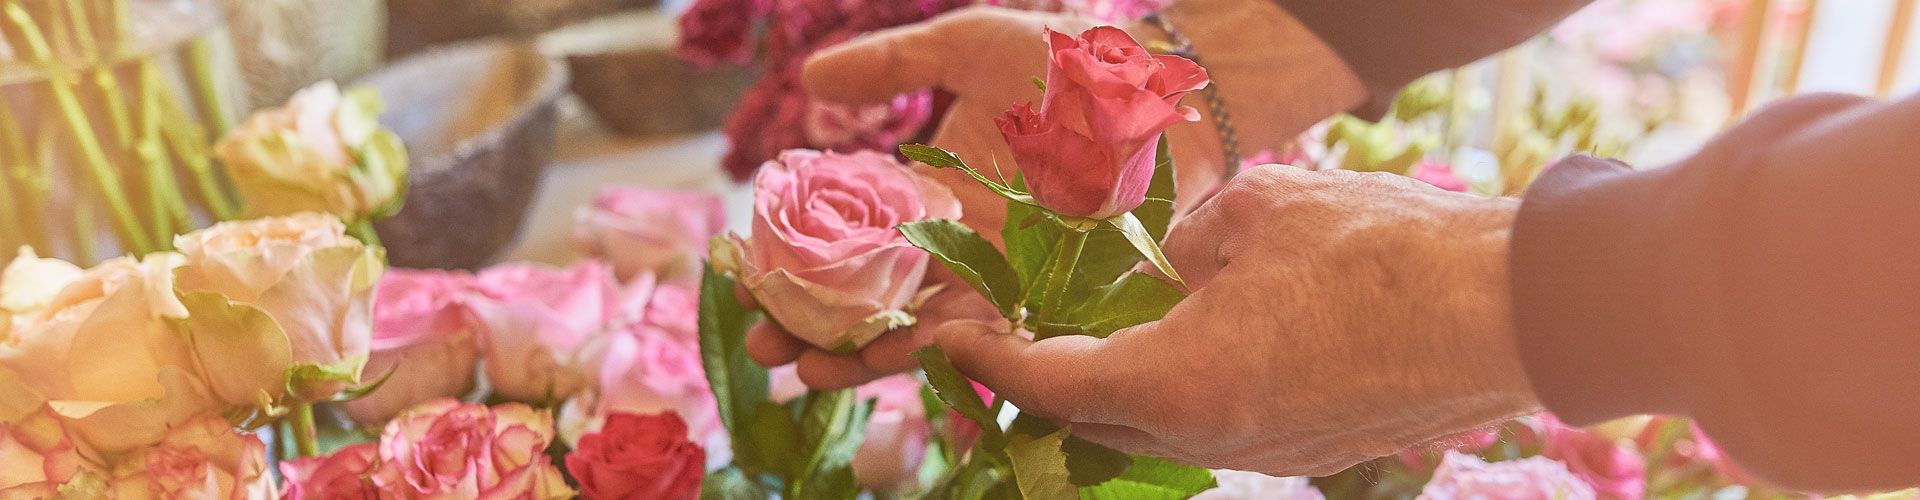 Fiorista Matrimonio Roma - Rosario Flowers & Gifts Boutique